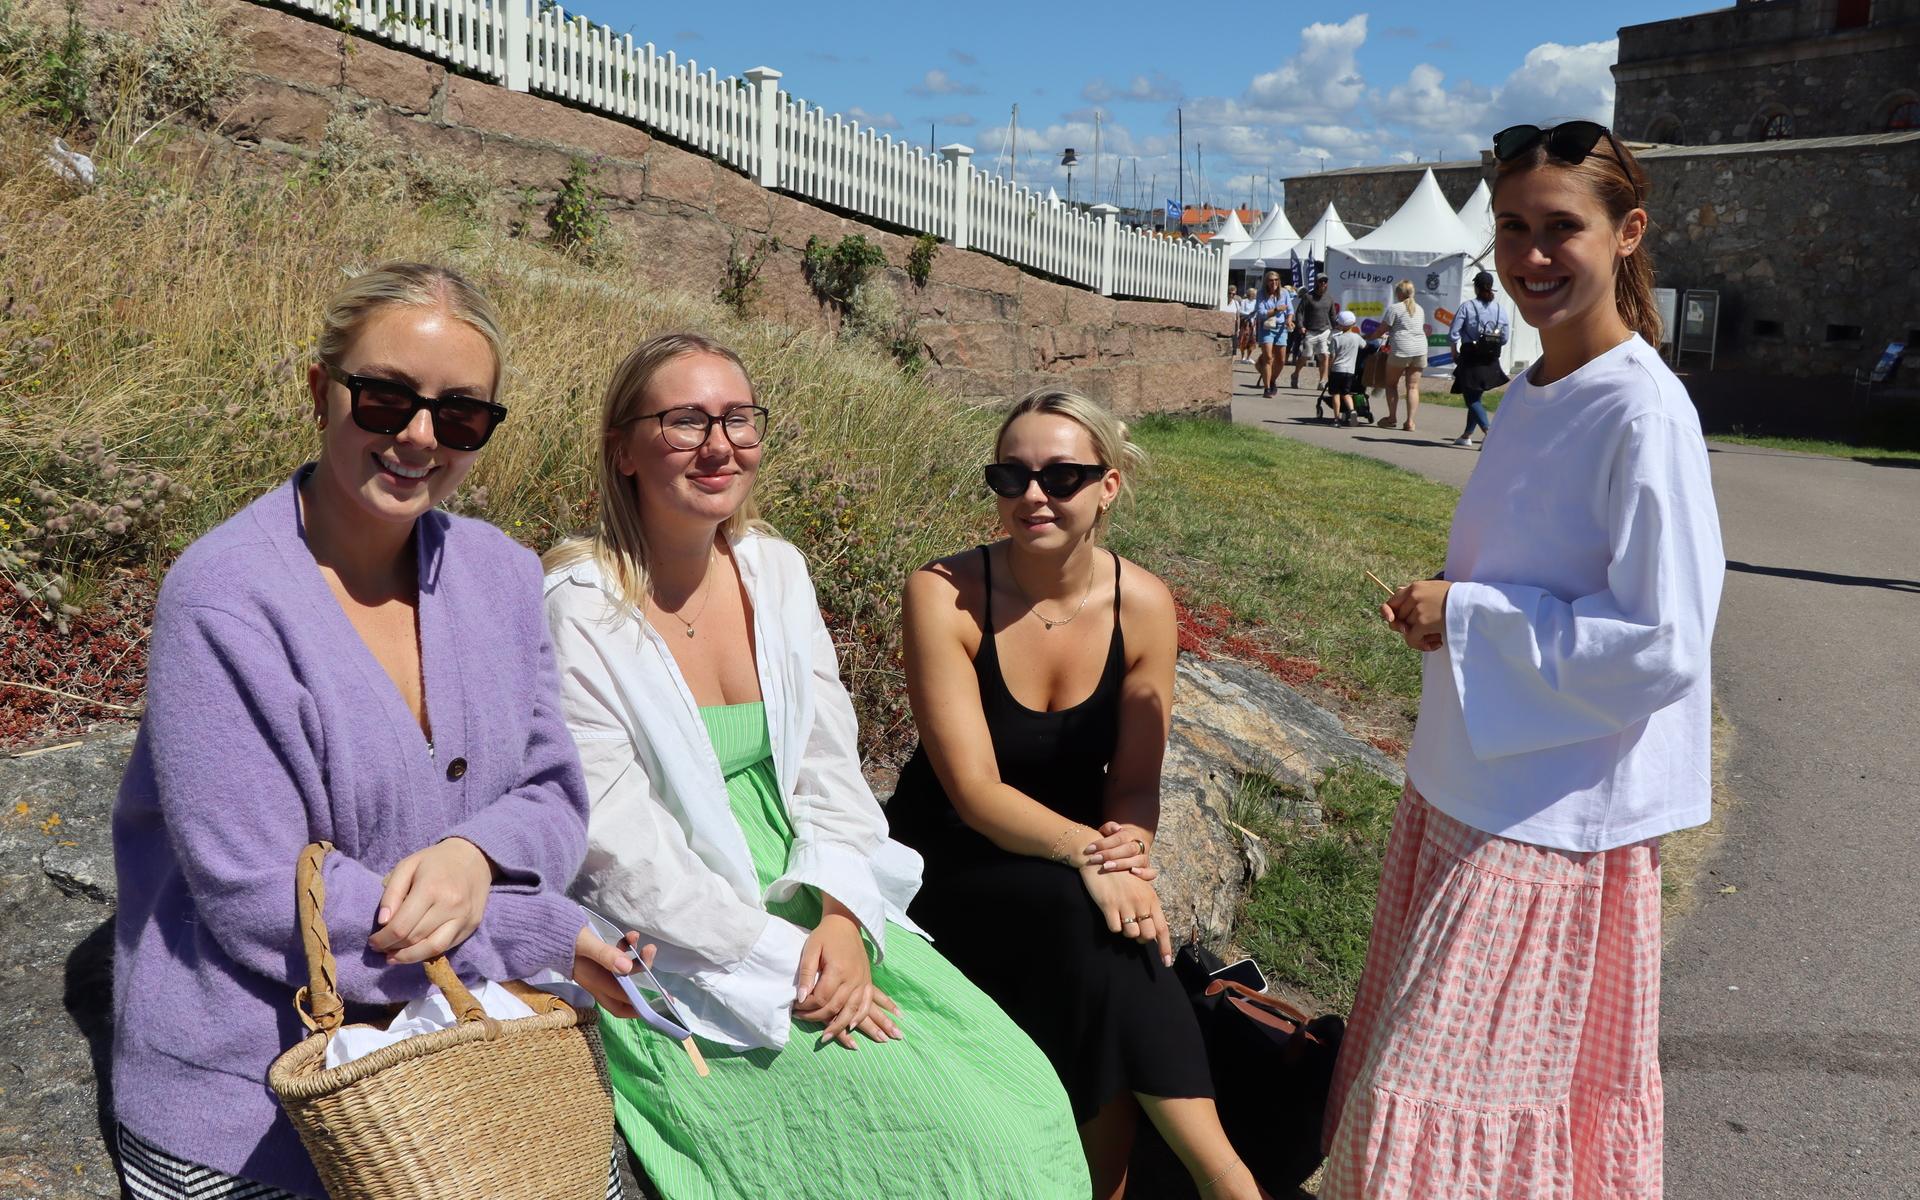 Kvartetten Smilla Söderberg, Lina Sandström, Julia Johansson och Ofelia Latella, Borås, var på Marstrand över dagen. ”Vi kollar läget.”